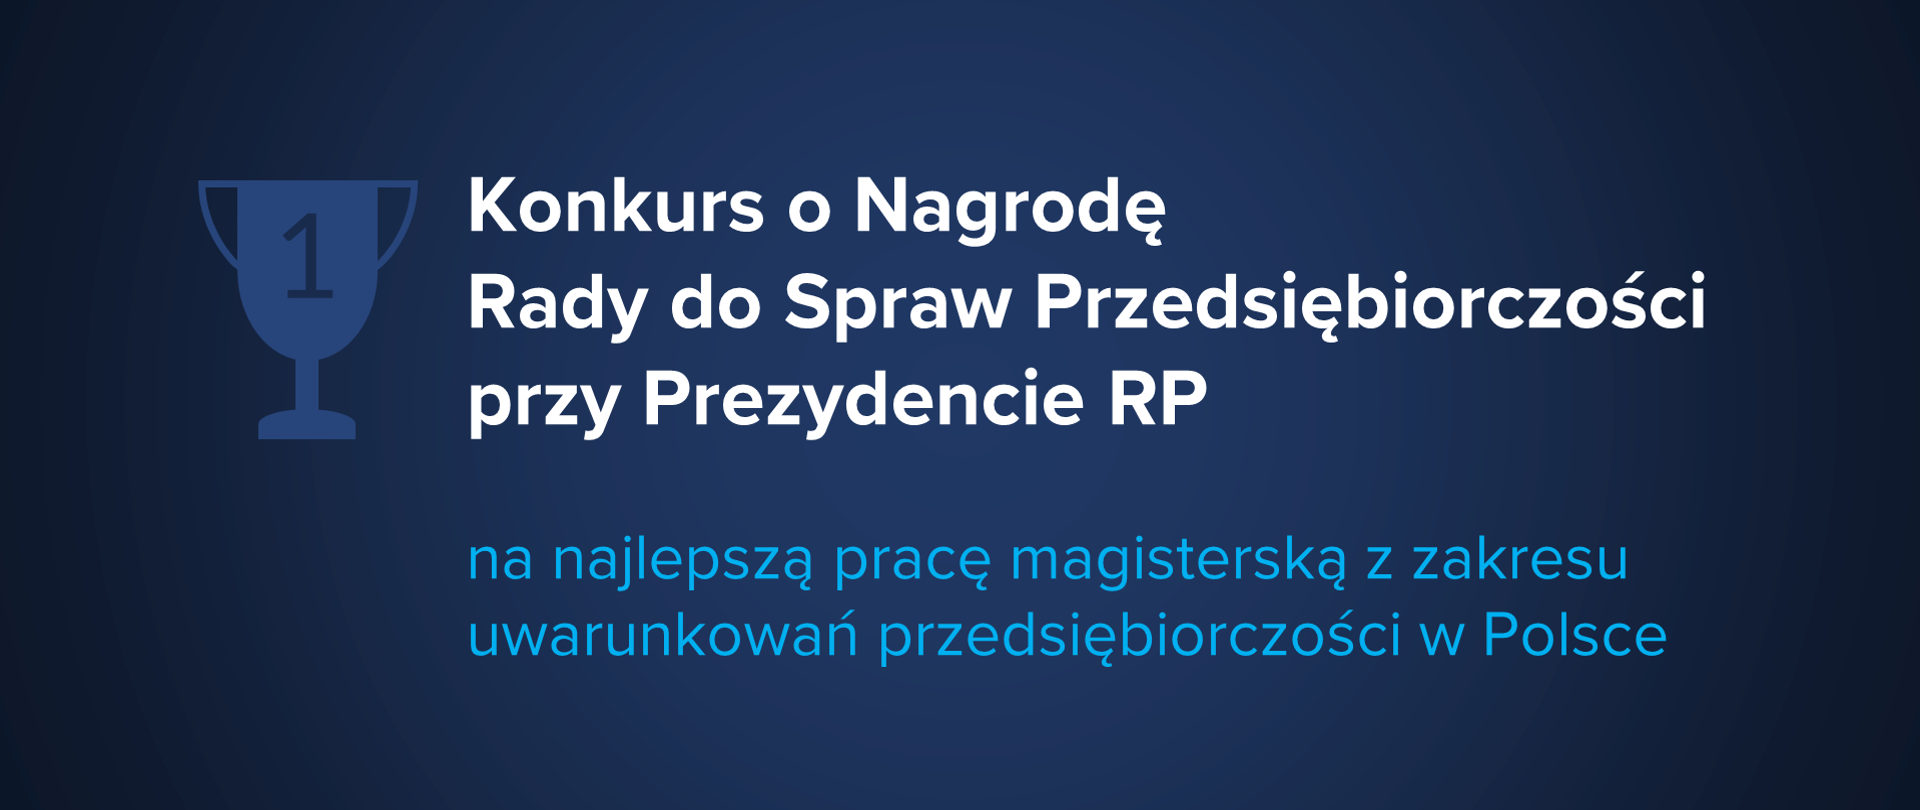 Grafika z tekstem: "Konkurs o Nagrodę Rady do Spraw Przedsiębiorczości przy Prezydencie RP na najlepszą pracę magisterską z zakresu uwarunkowań przedsiębiorczości w Polsce"